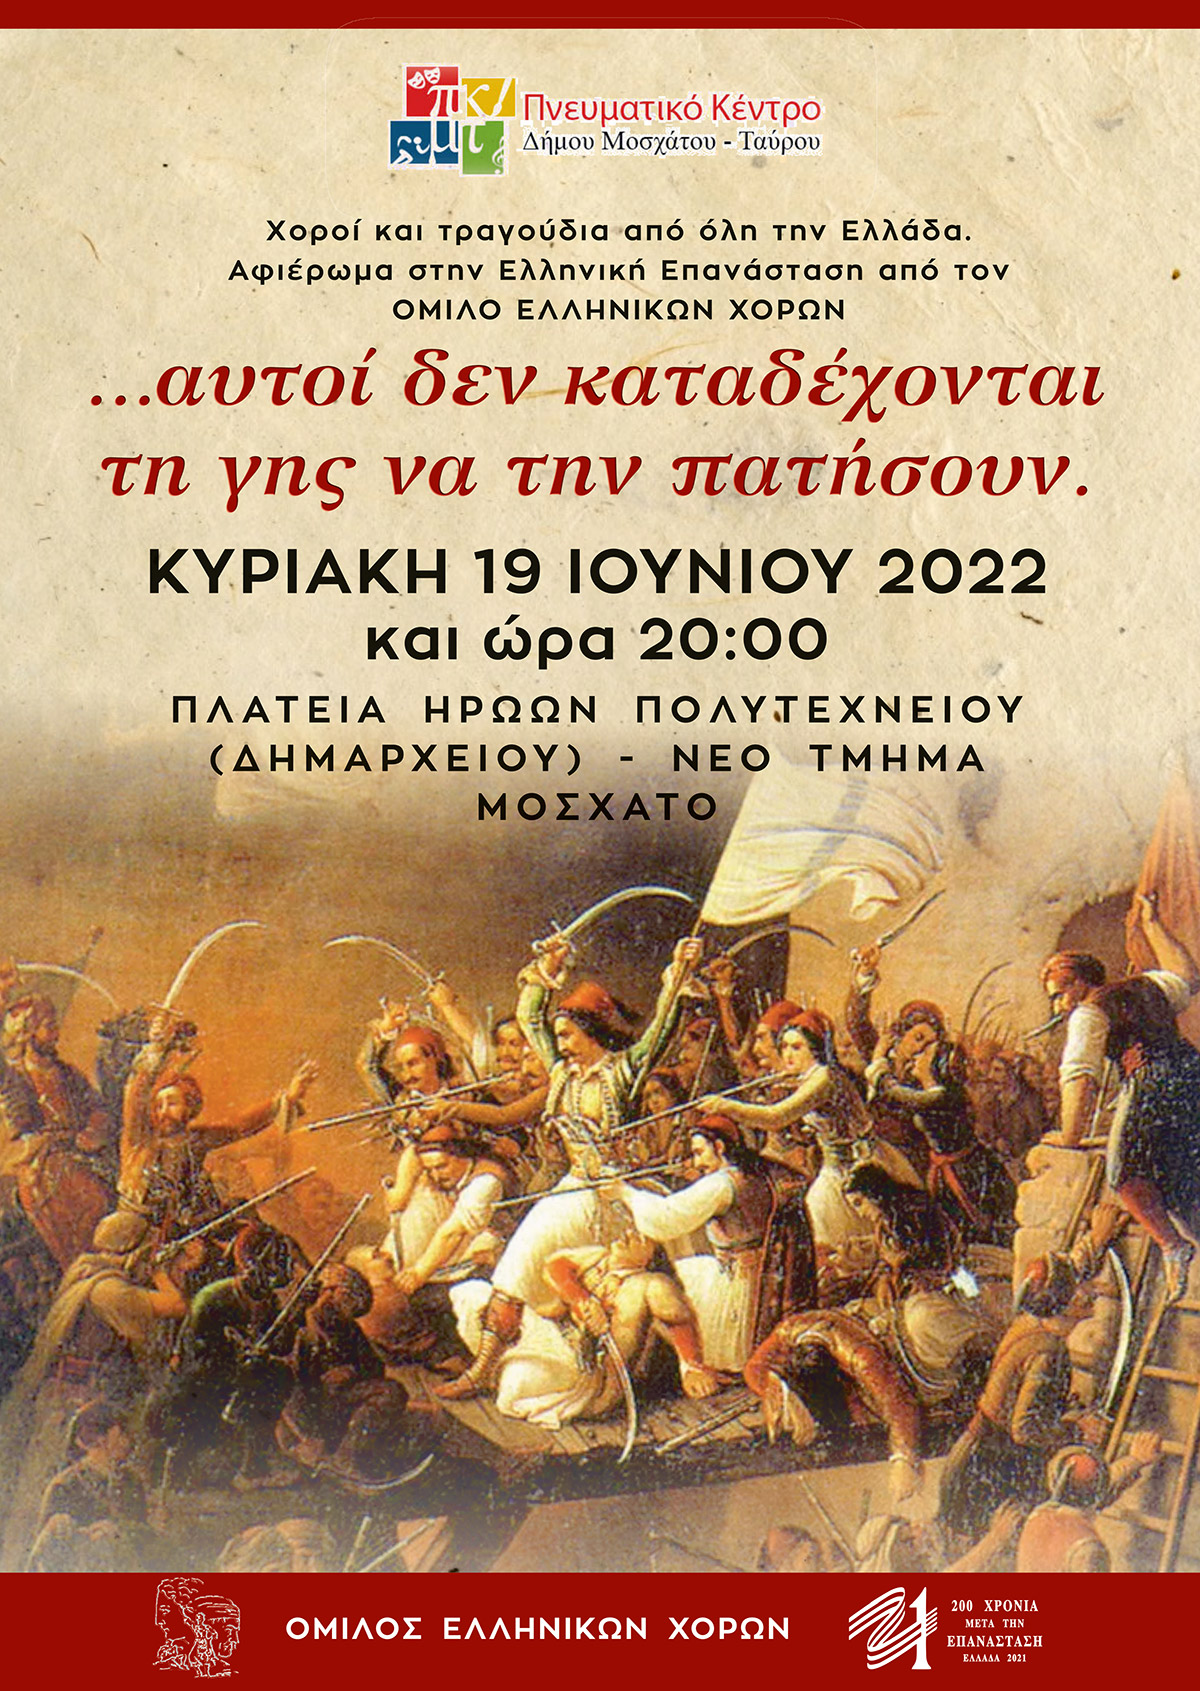 Αφιέρωμα στην Ελληνική Επανάσταση από τον Όμιλο Ελληνικών Χορών του Πνευματικού Κέντρου του Δήμου Μοσχάτου-Ταύρου